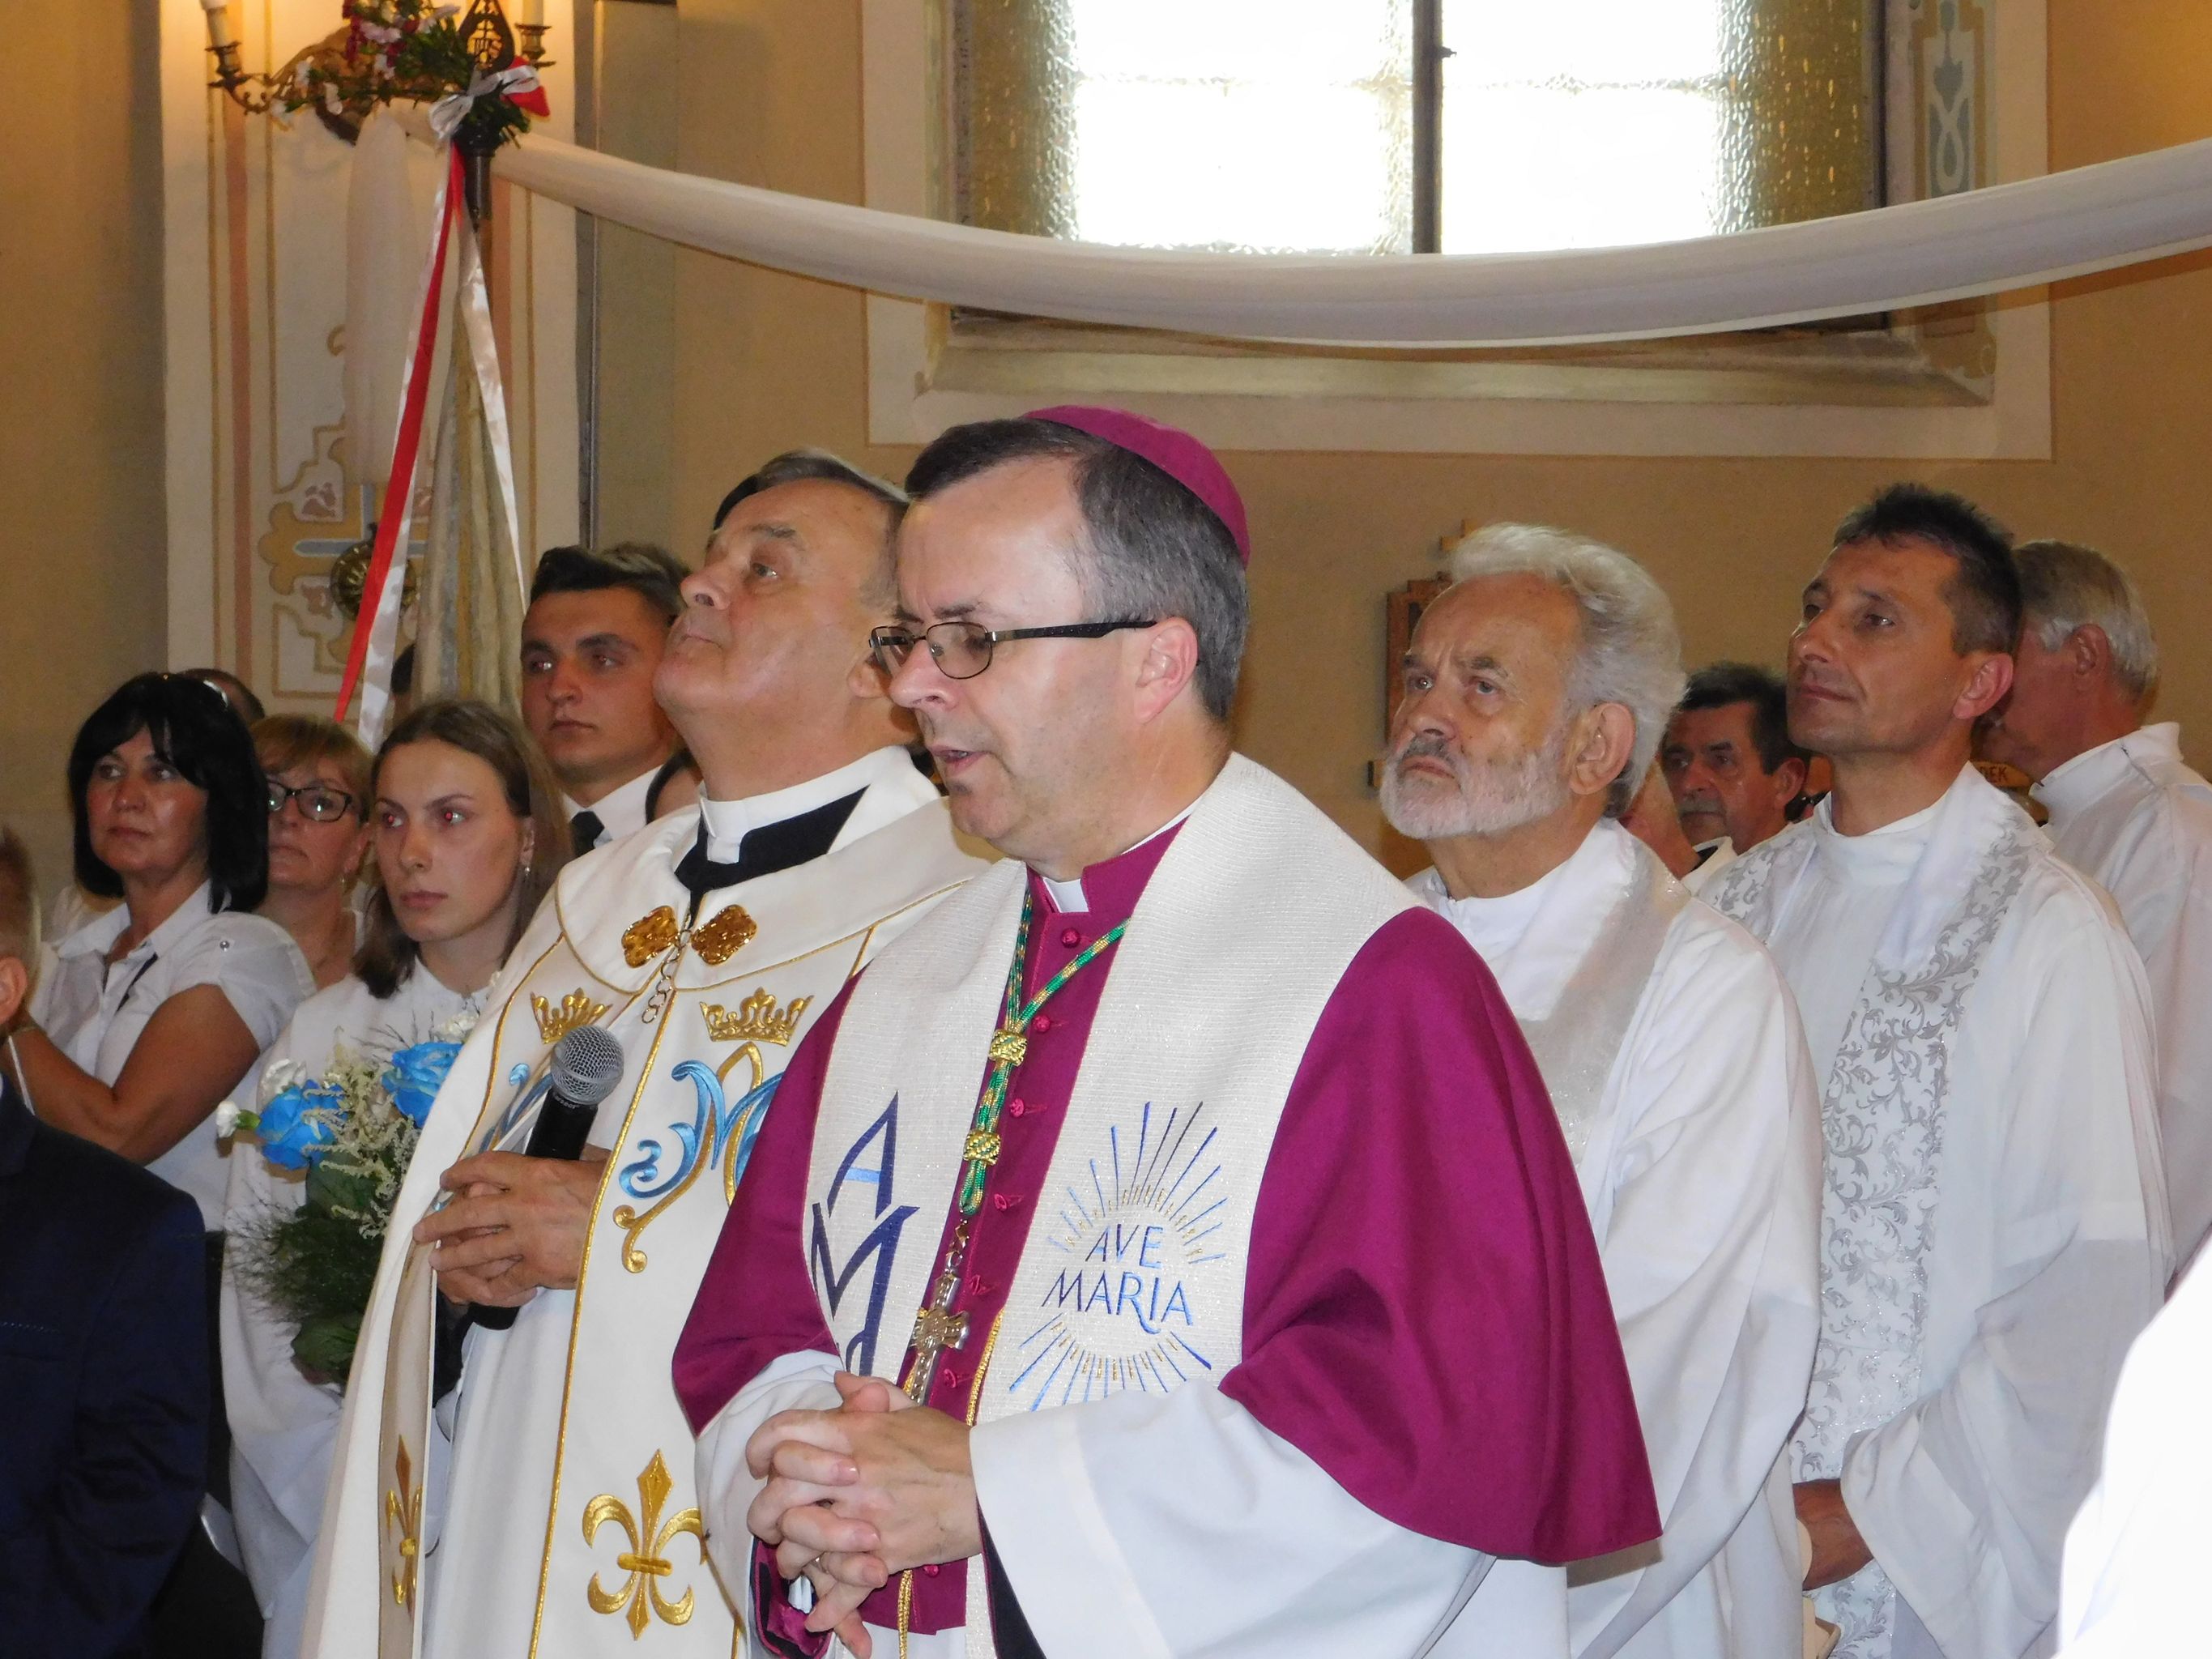 Jutro nowy biskup obejmie władzę nad diecezją kaliską - Zdjęcie główne